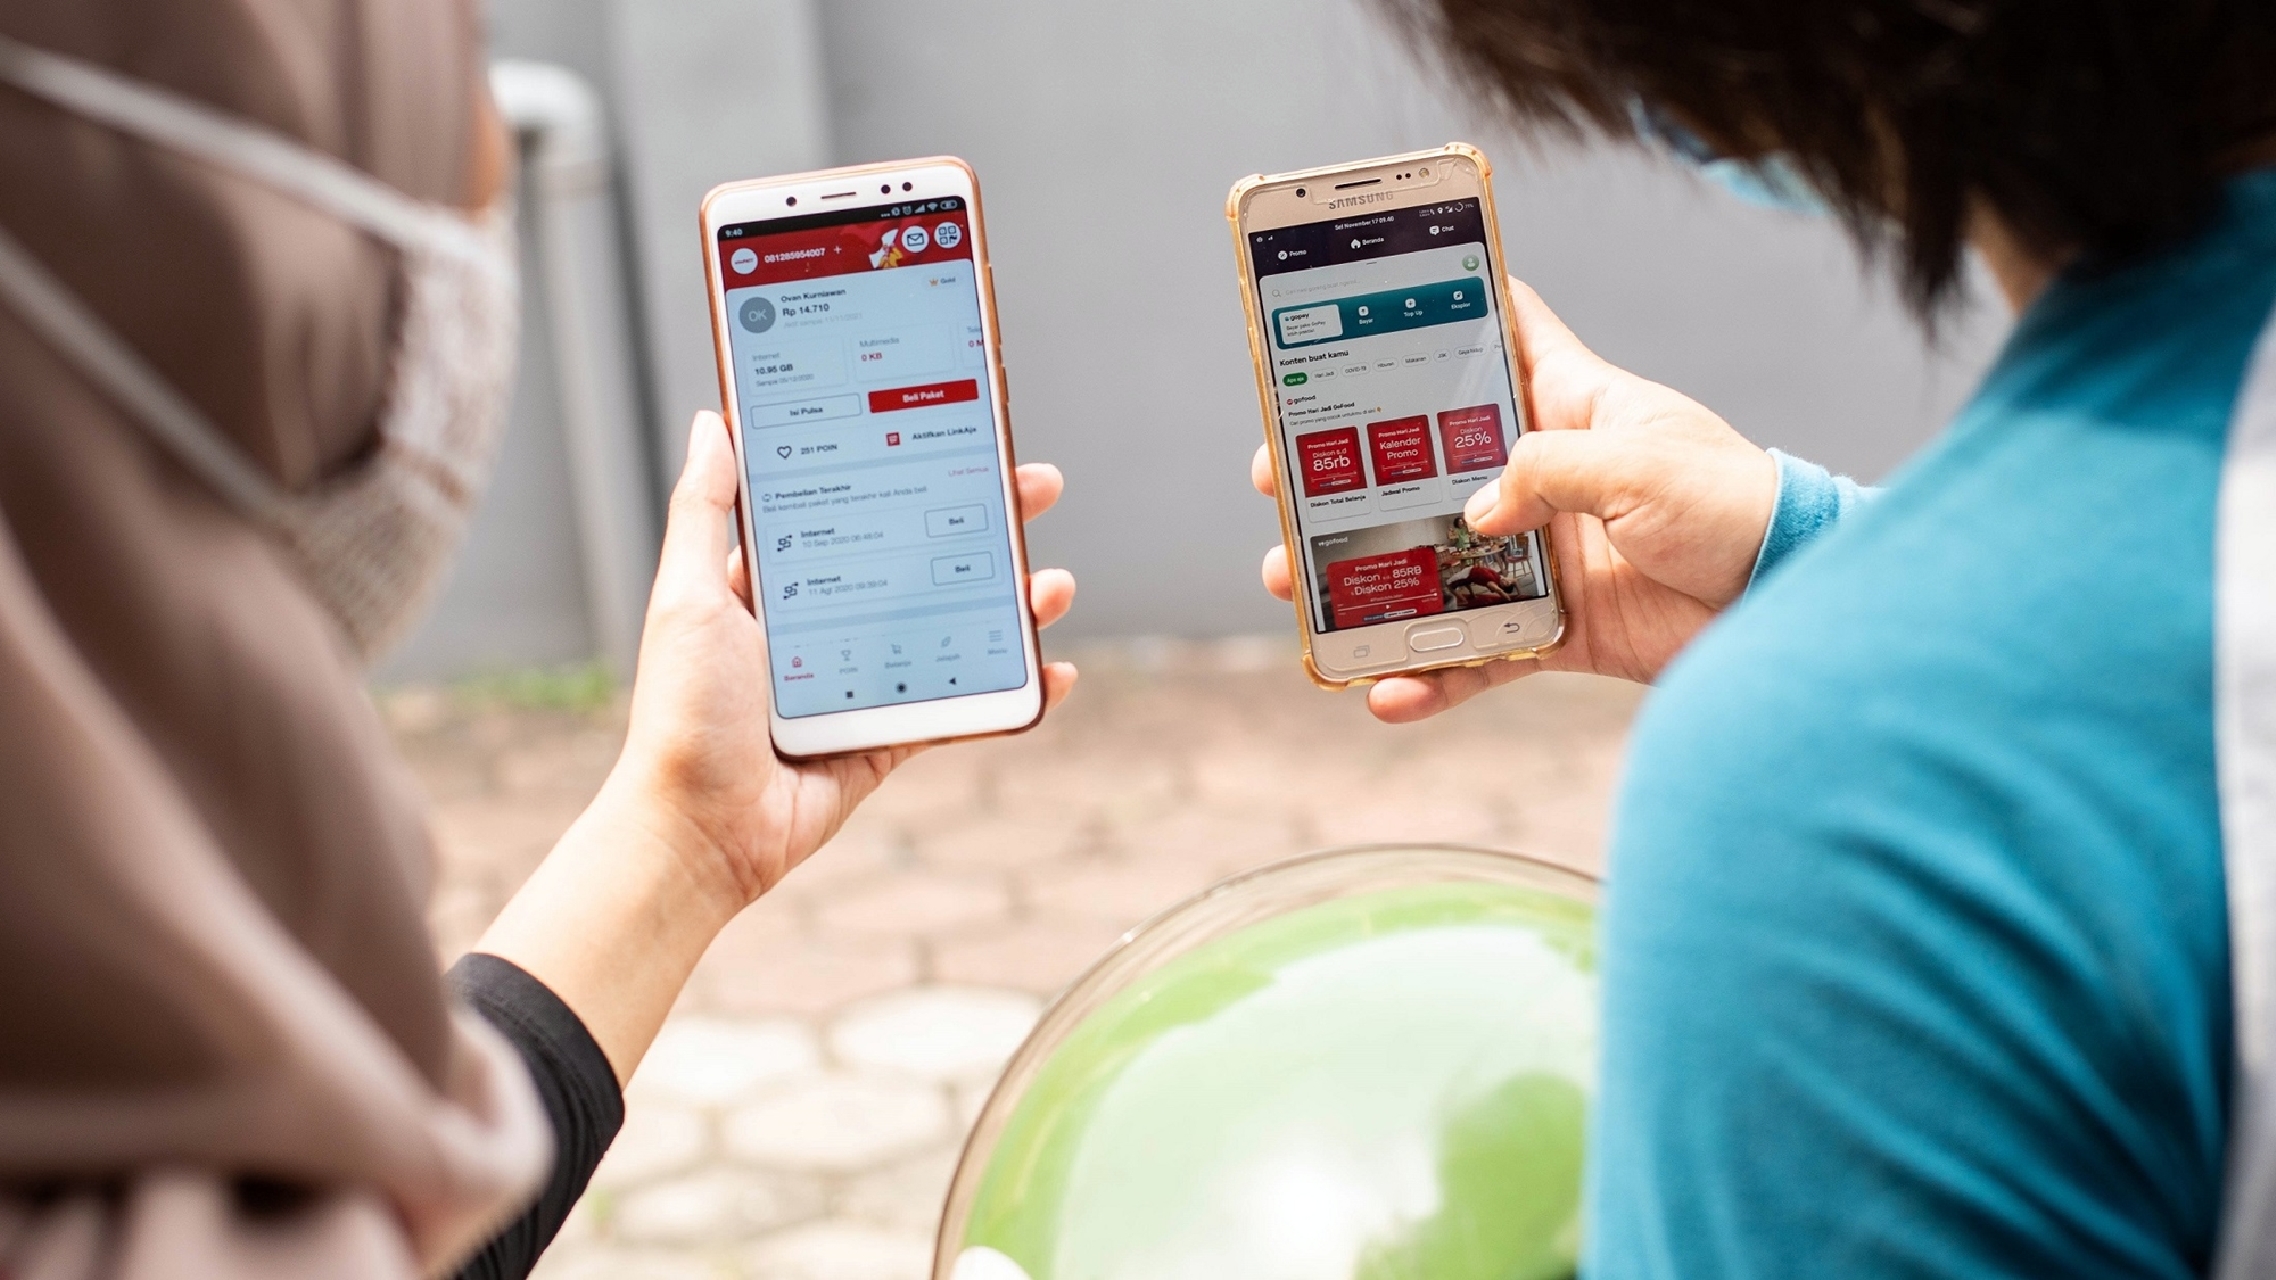 Telkomsel suntikan dana Rp 2,17 triliun ke Gojek, ini 5 faktanya